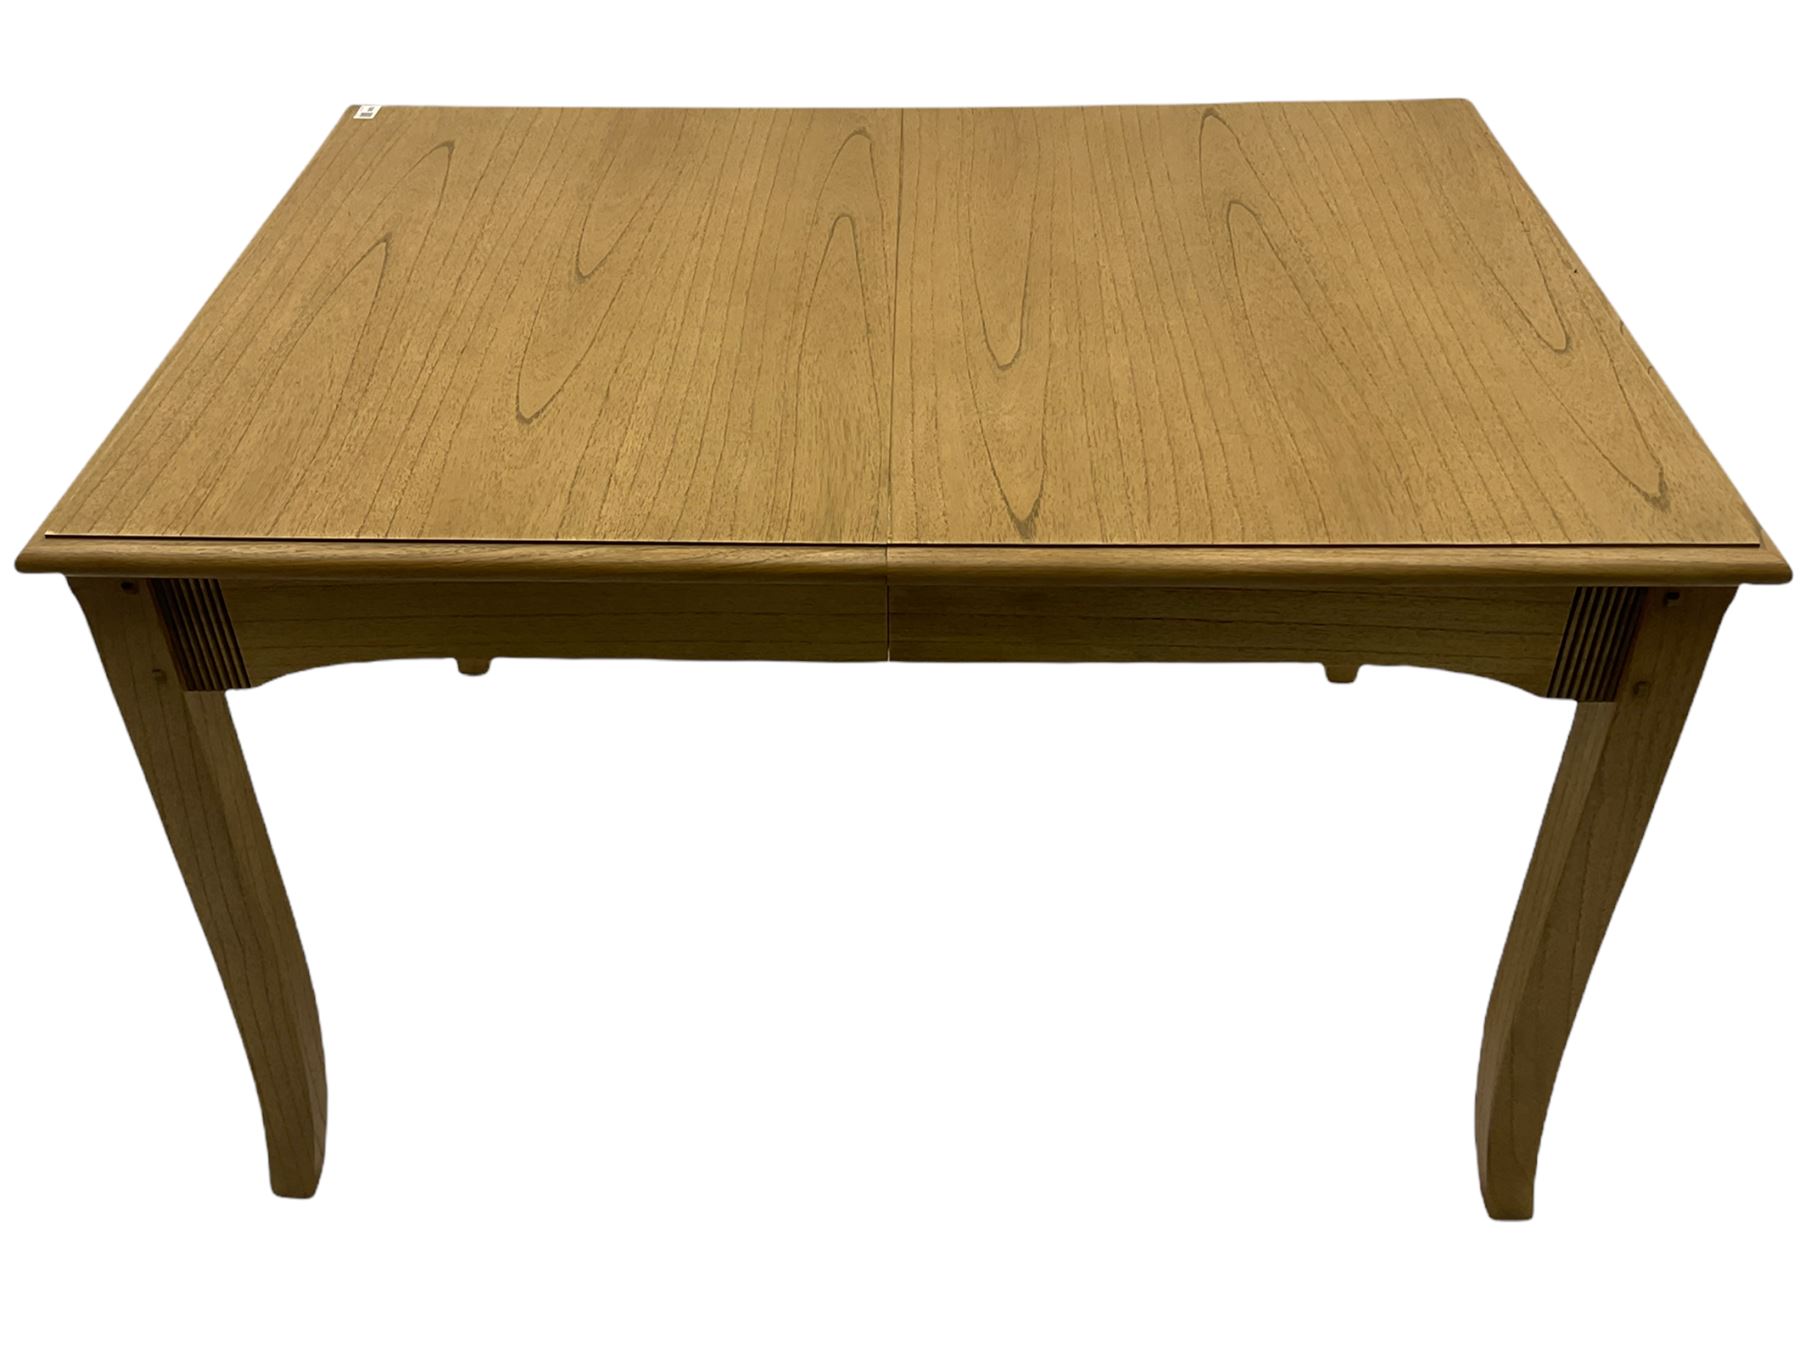 Windsor by Mark Devany oak rectangular extending dining table - Image 8 of 15